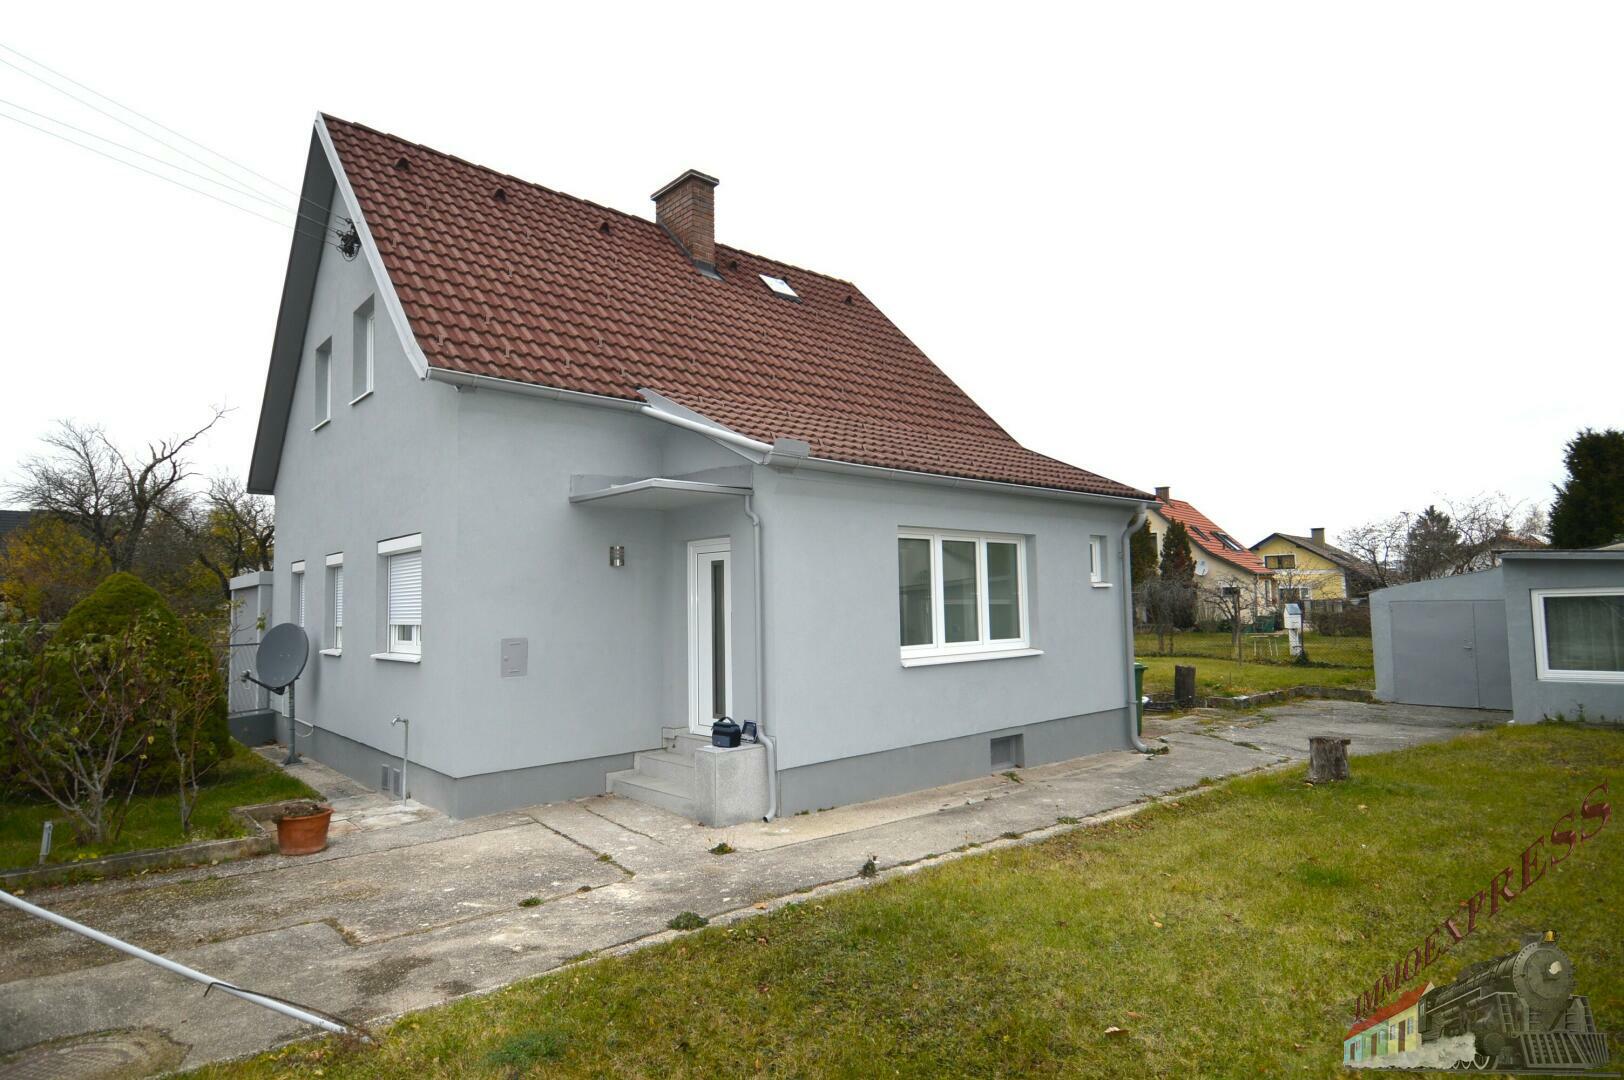 Saniertes Einfamilienhaus in ruhiger Siedlungslage mit Garage und Nebengebäude - gute Verkehrsanbindung